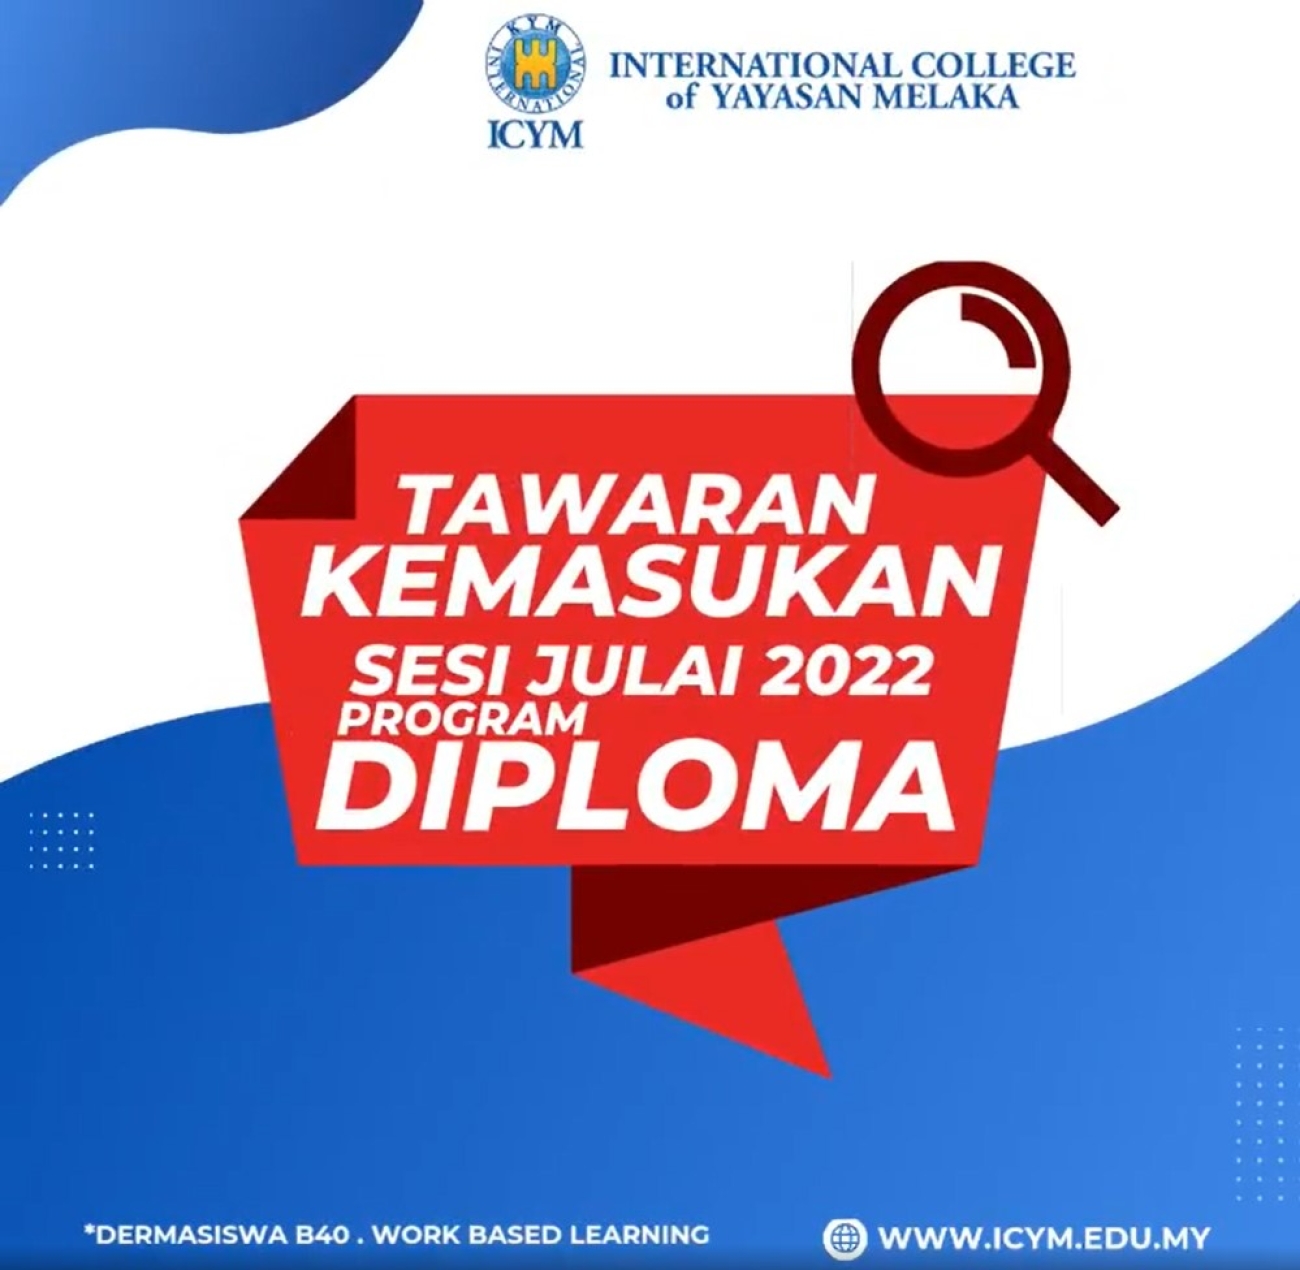 Kepada adik-adik lepasan SPM 2021 yang berminat untuk mengetahui lebih lanjut tentang Diploma yang ada di Kolej Antarabangsa Yayasan Melaka (ICYM).